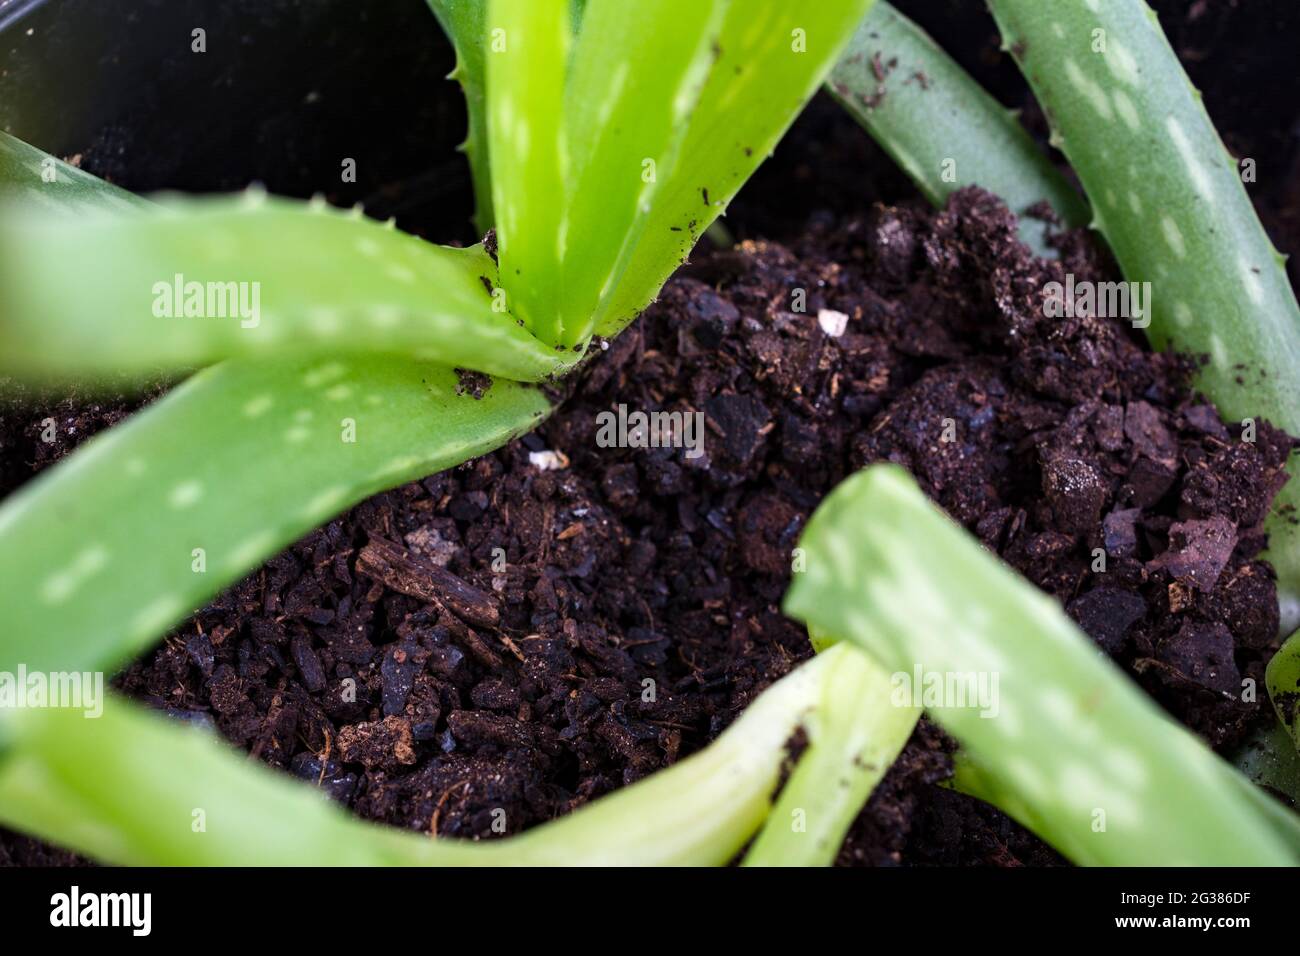 Petites plantules d'aloe vera dans un pot. L'aloe vera est une espèce végétale succulente du genre Aloe. Vivace à feuilles persistantes, elle provient du P arabe Banque D'Images